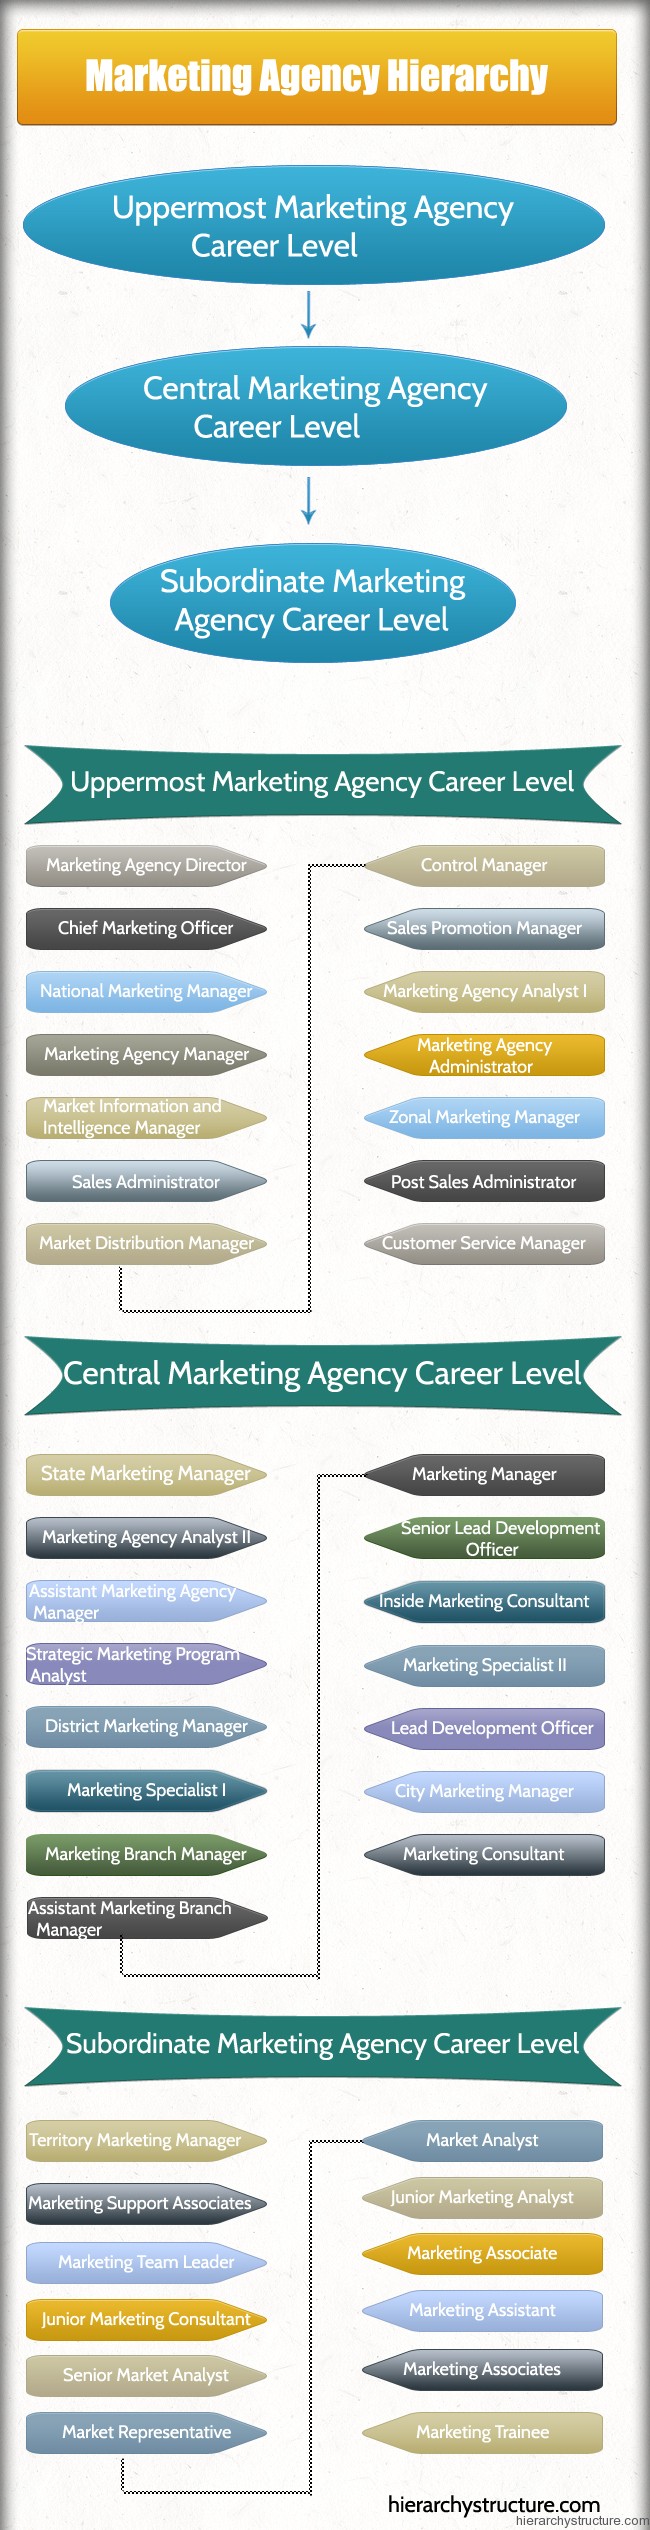 Marketing Agency Hierarchy